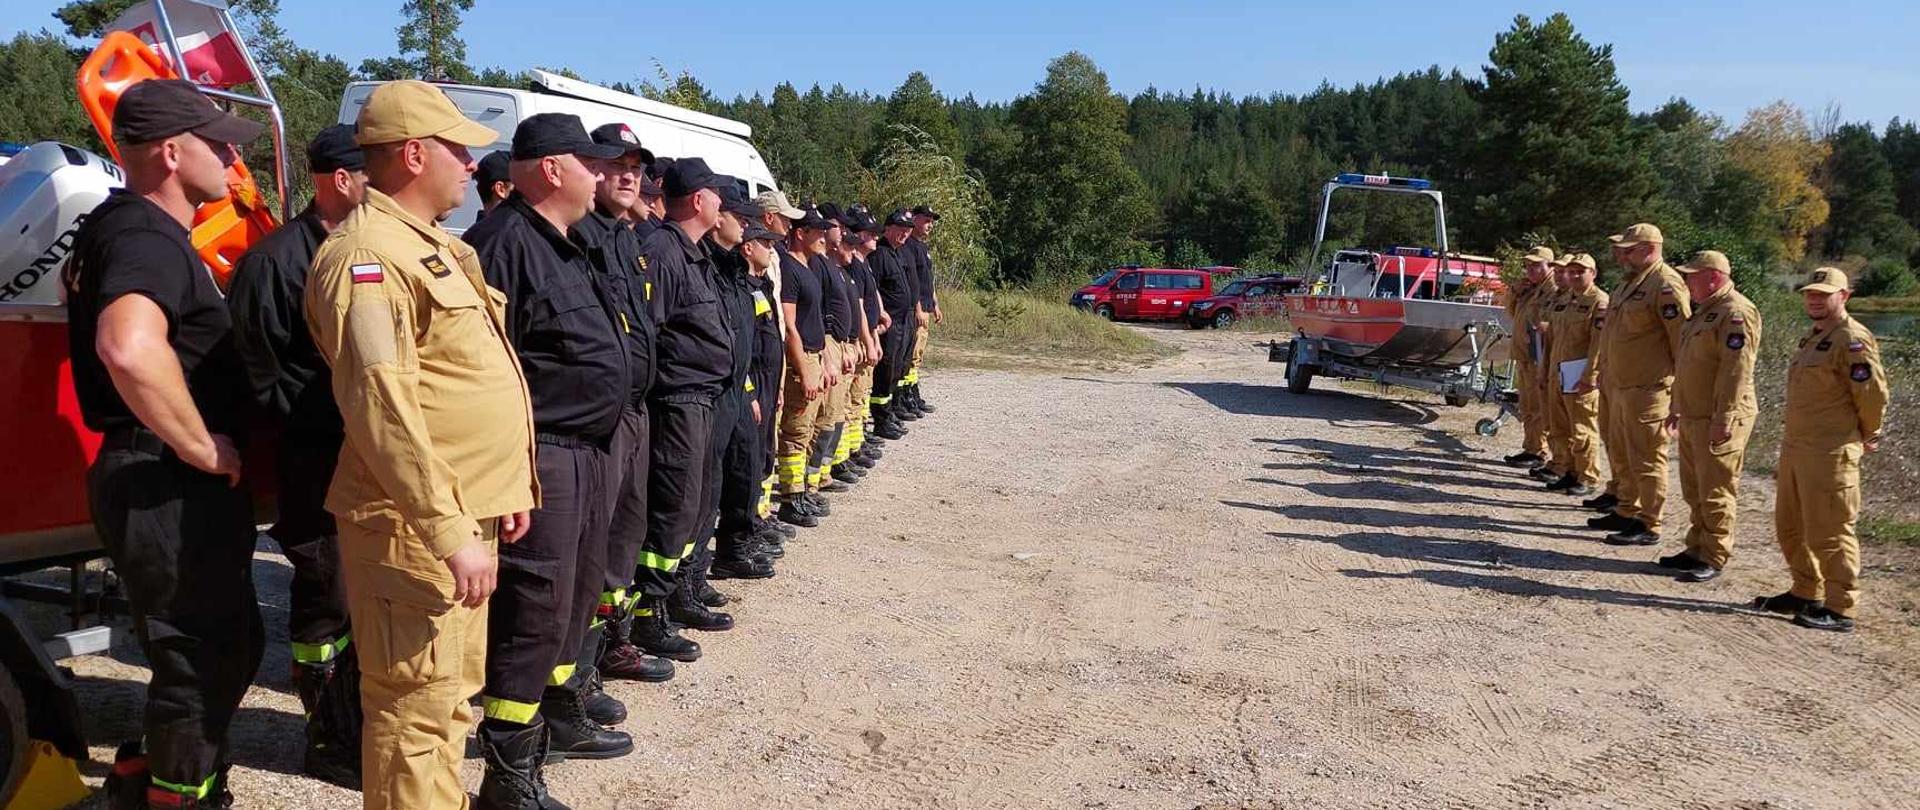 Ćwiczący strażacy stoją w dwuszeregu na zbiórce frontem do osób funkcyjnych.